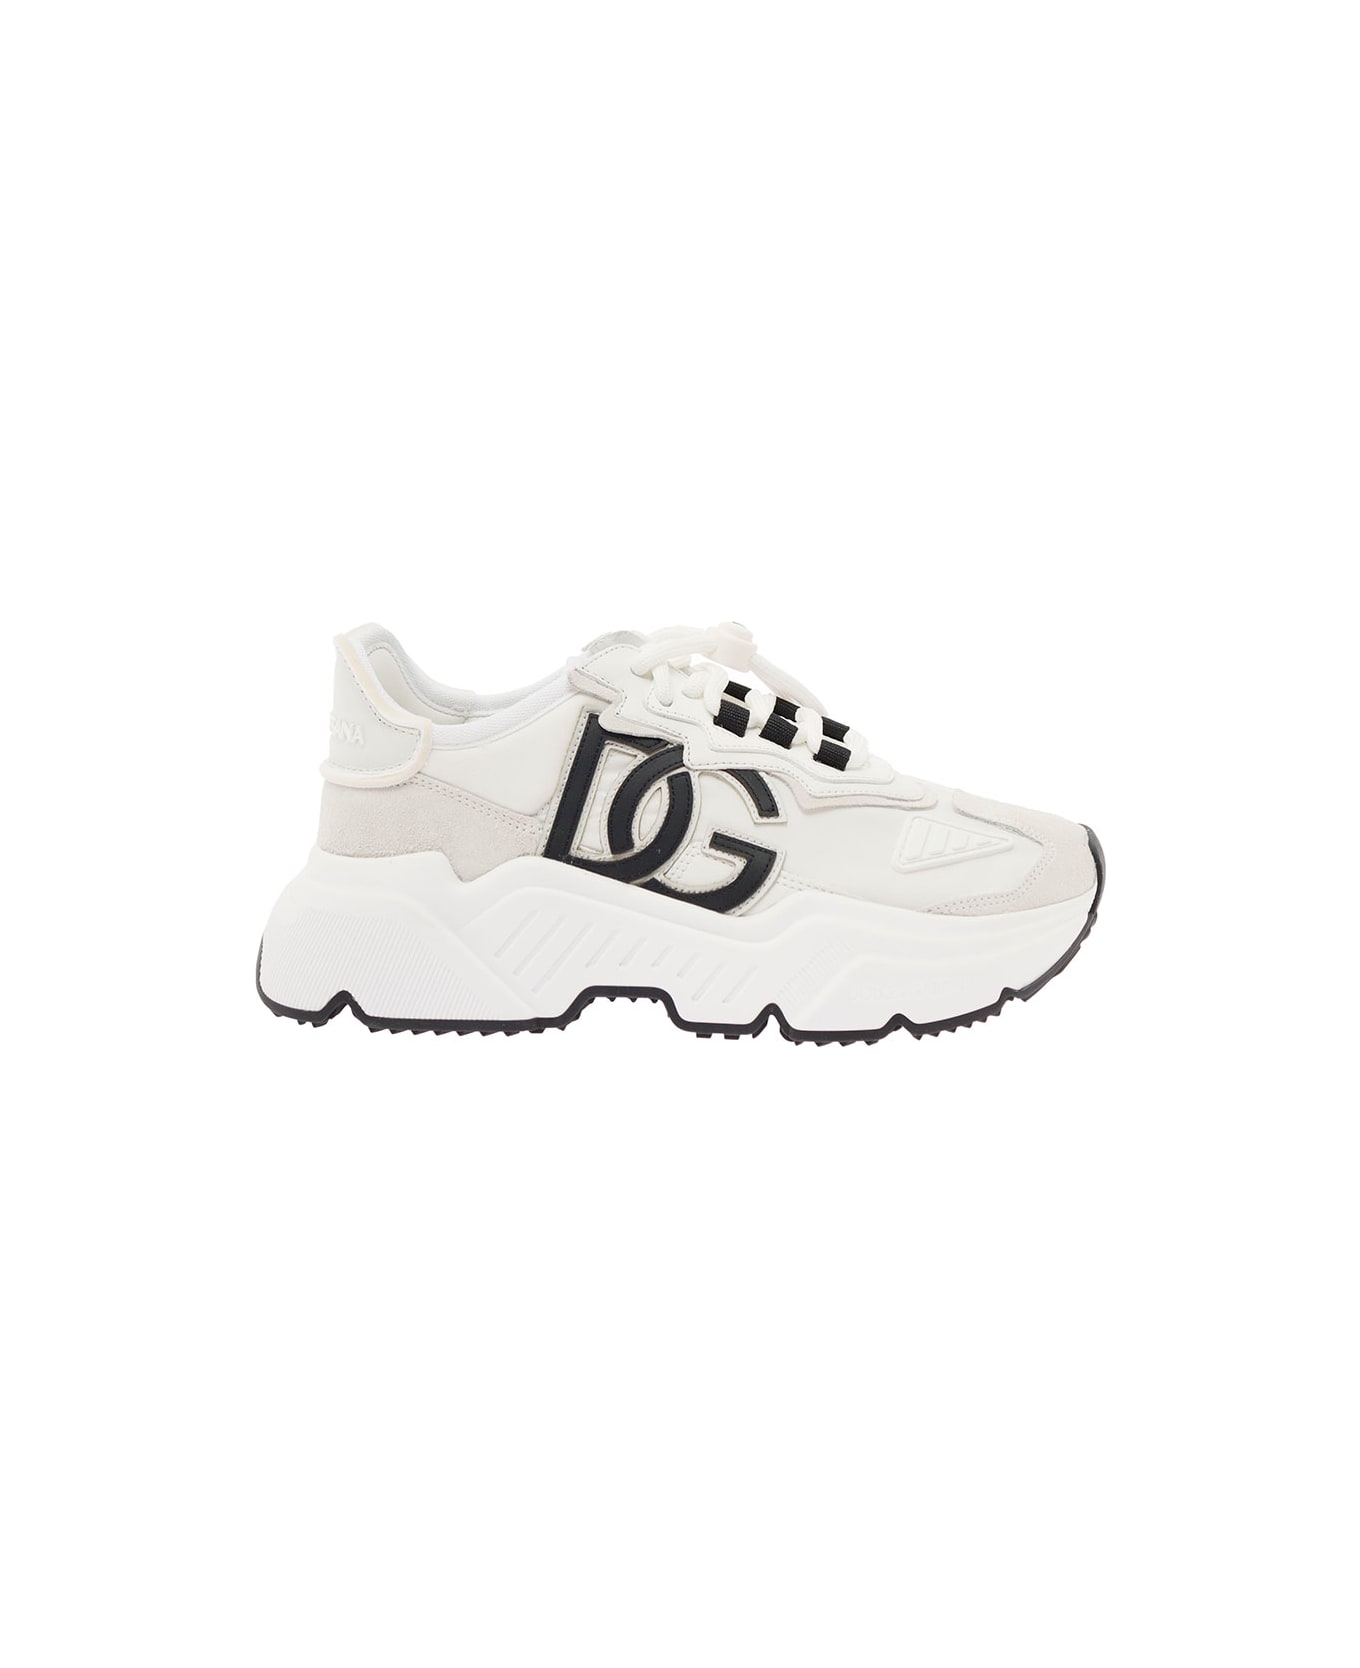 Dolce & Gabbana Daymaster Sneaker - White/black